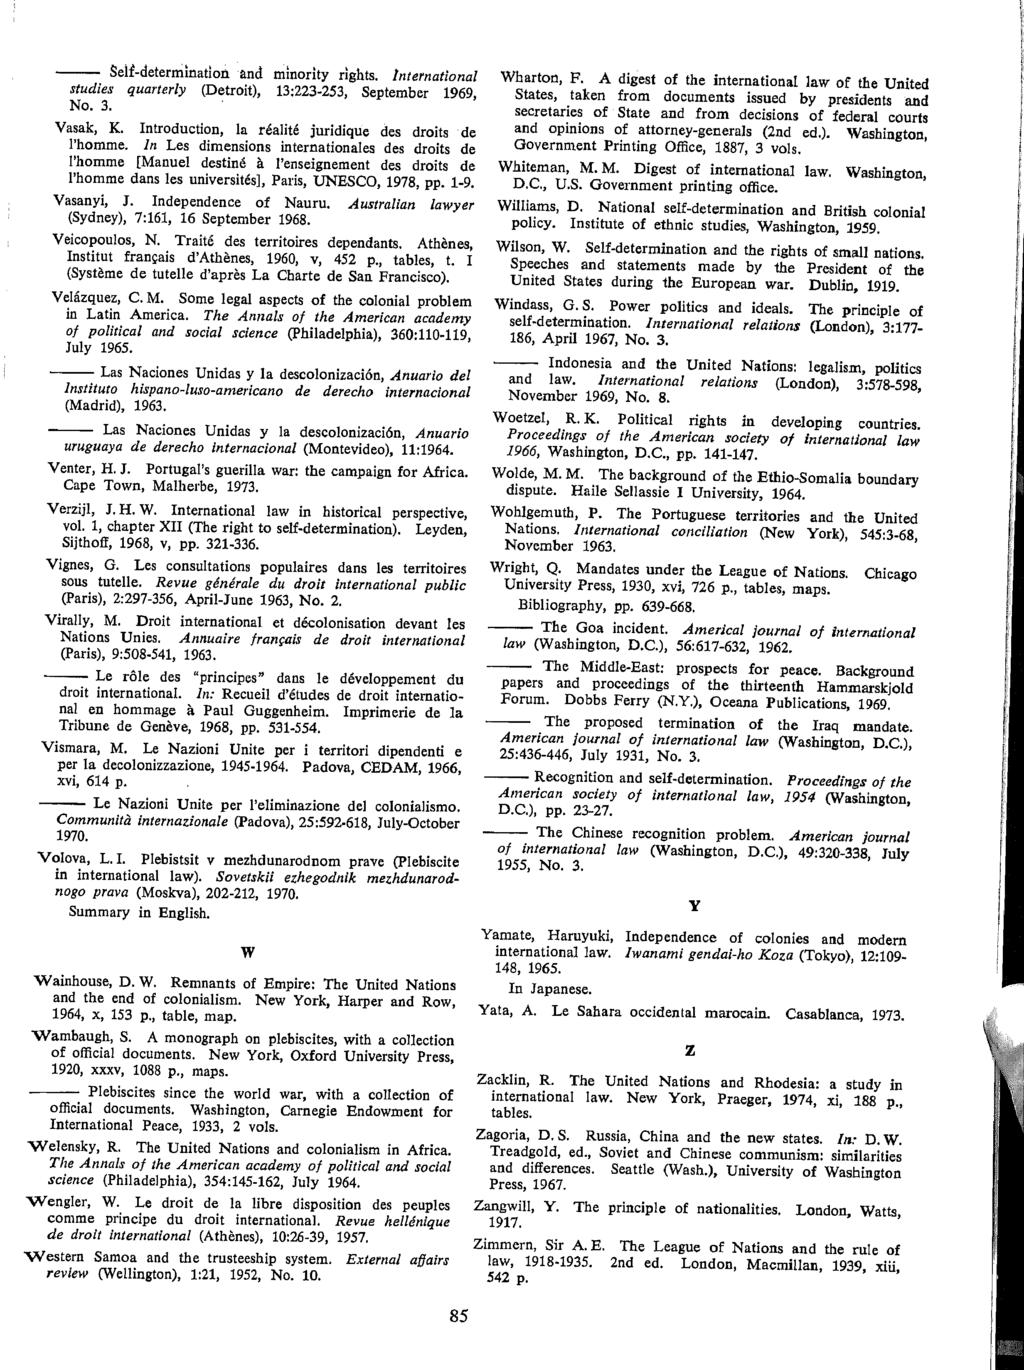 --- Seif-determination and minority rights. international studies quarterly (Detroit), 13:223-253, September 1969, No. 3. Vasak, K. Introduction, la realite juridique des droits de l'homme.